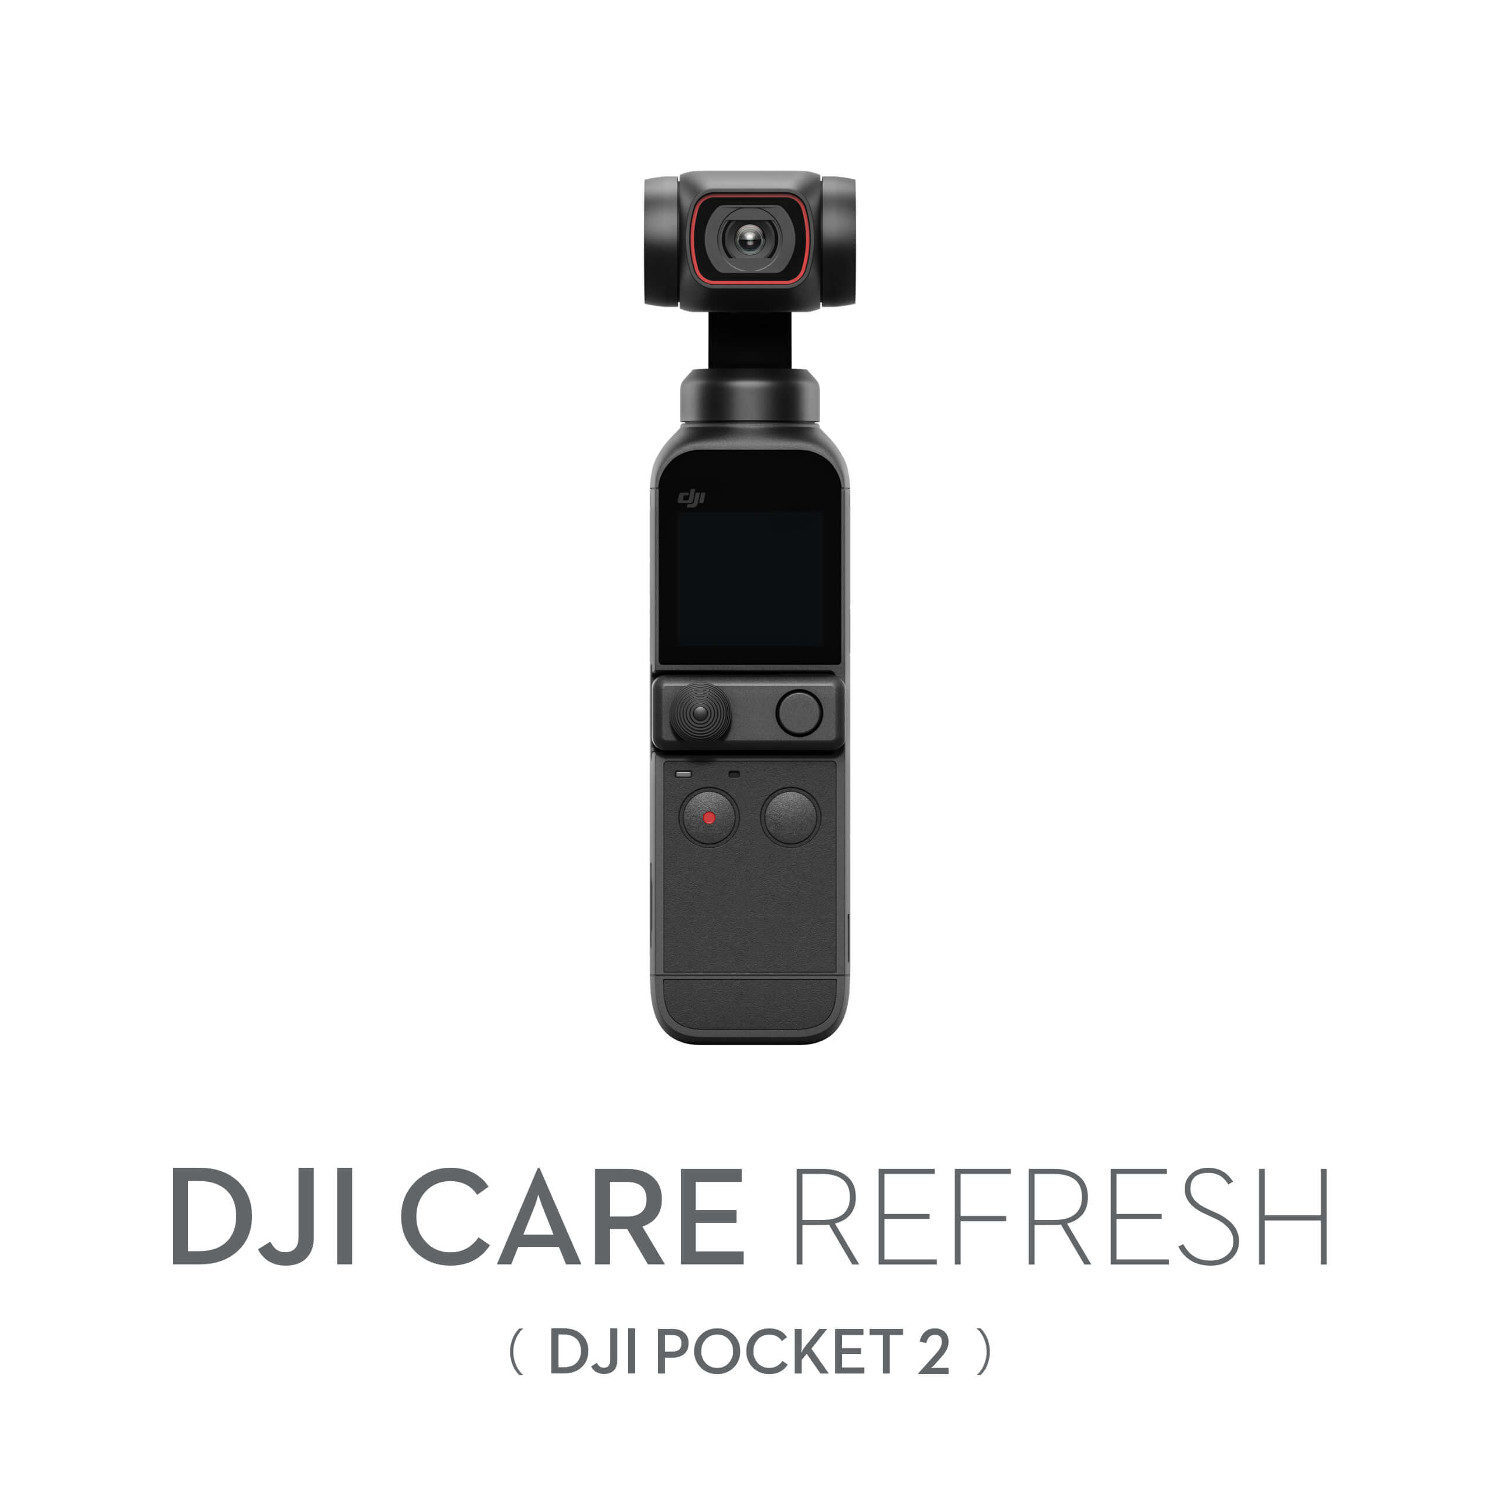 DJI Care Refresh 1-Year Plan Pocket 2